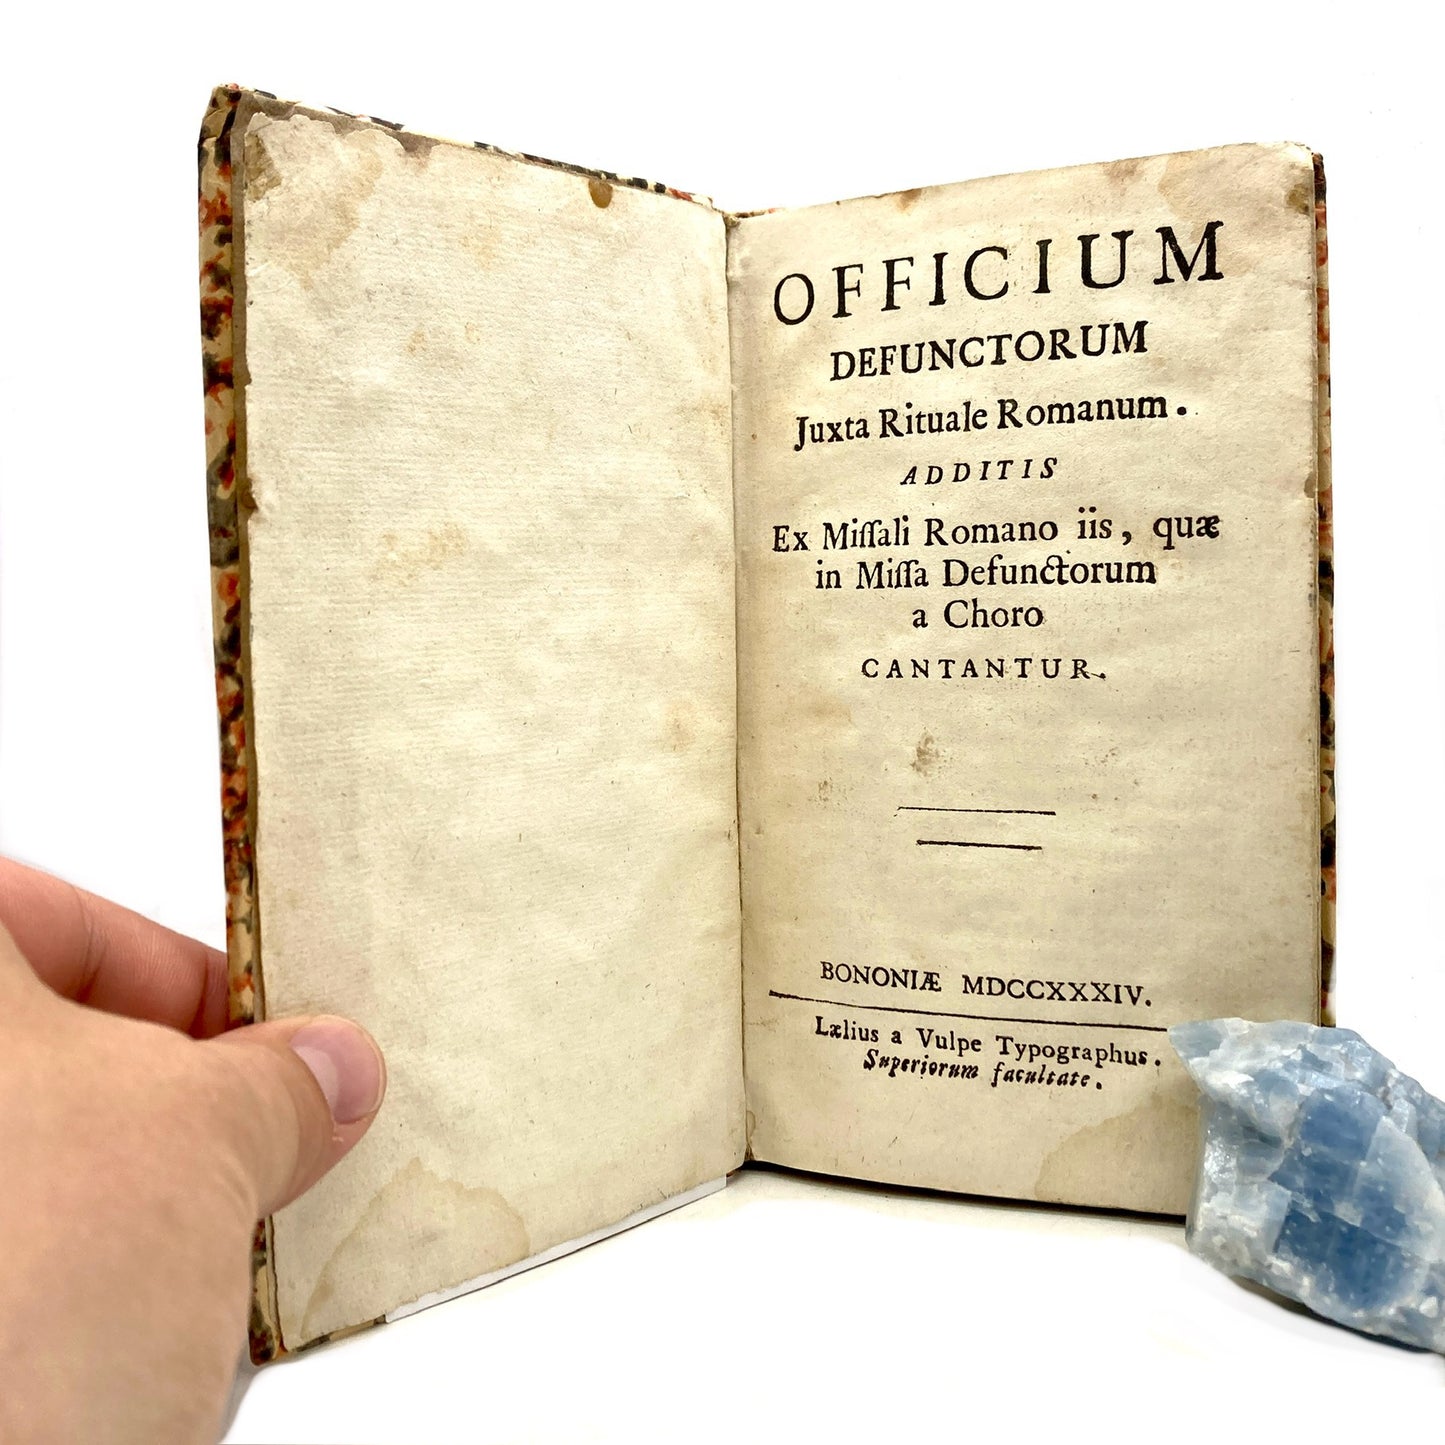 "Officium Defunctorum Juxta Romanum" [Lelio Dalle Volpe, 1734] - Offices of the Dead